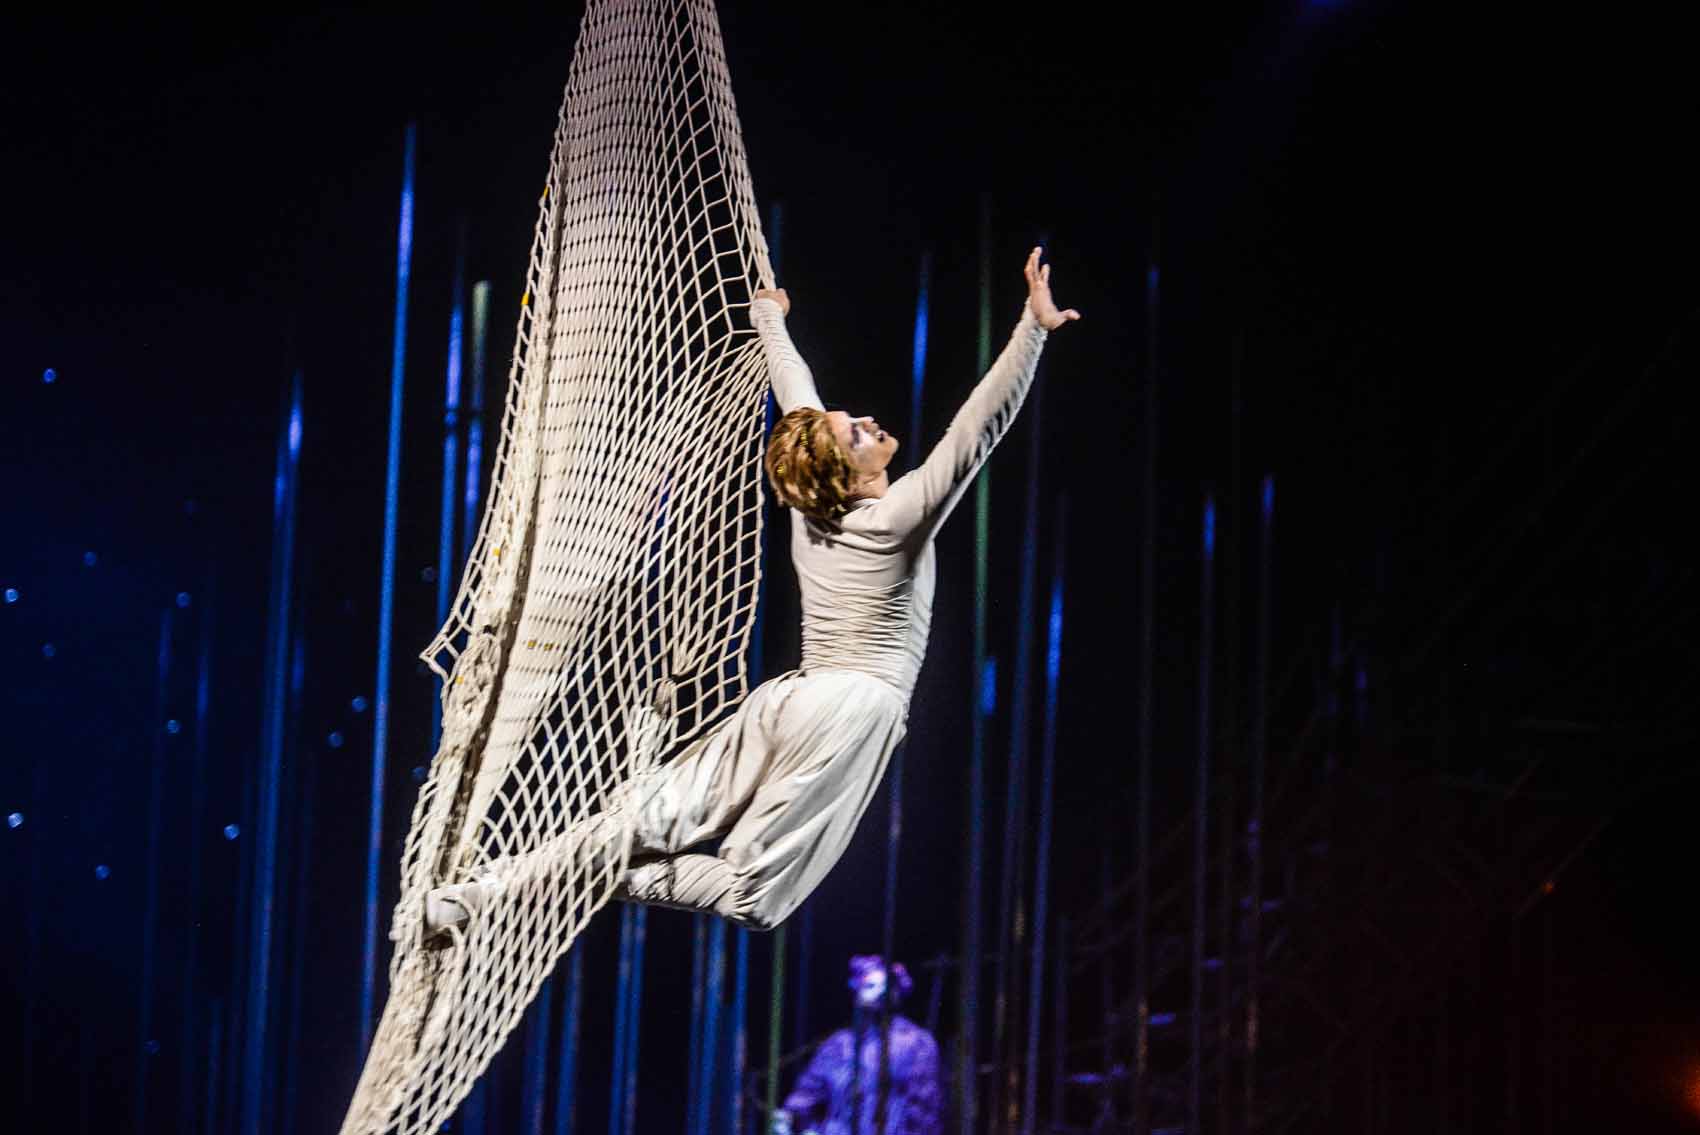 Nem hiszed el, hogy ilyen van! - 15 fotó a Cirque du Soleil 15 éves Varekai előadásáról